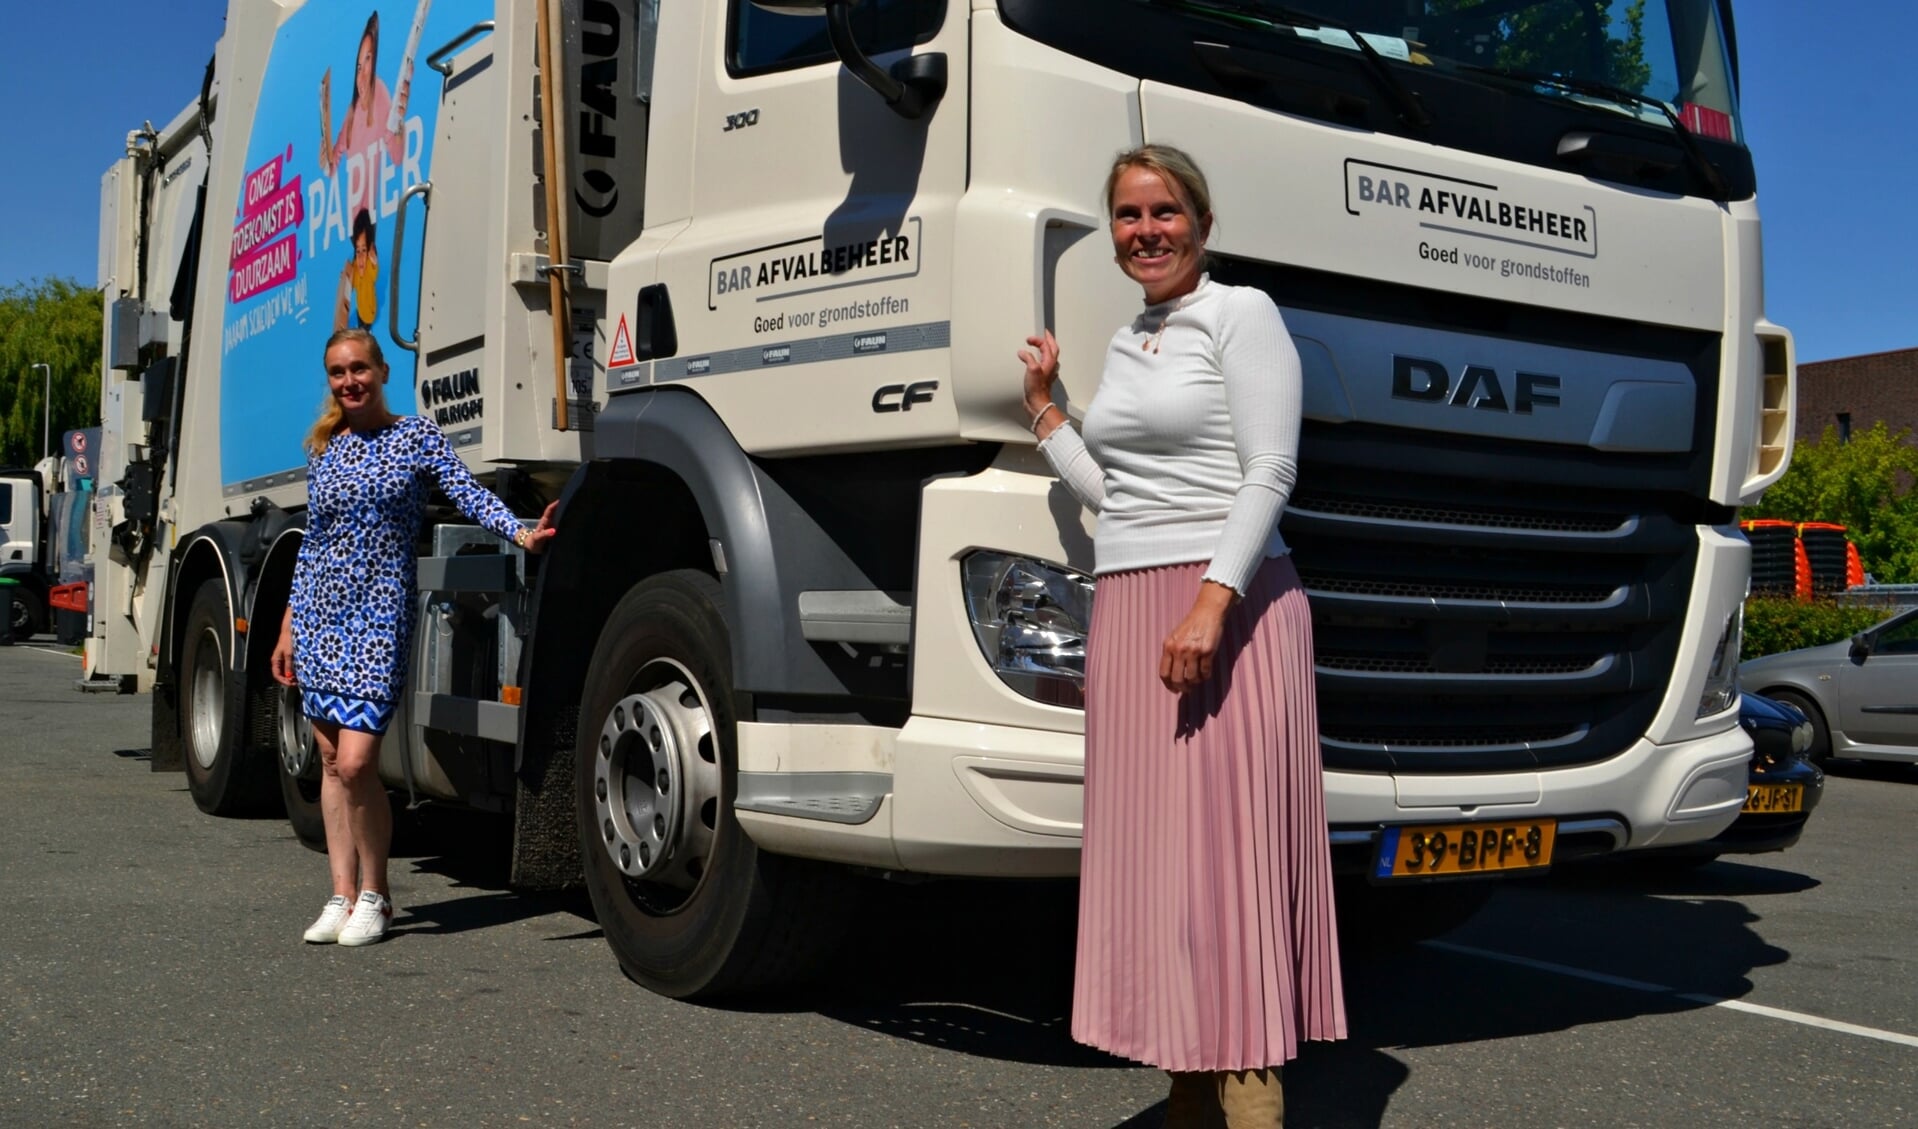 Afvalcoaches Jolanda Teekens en Christa Schutte bij één van de voertuigen van BAR Afvalbeheer.